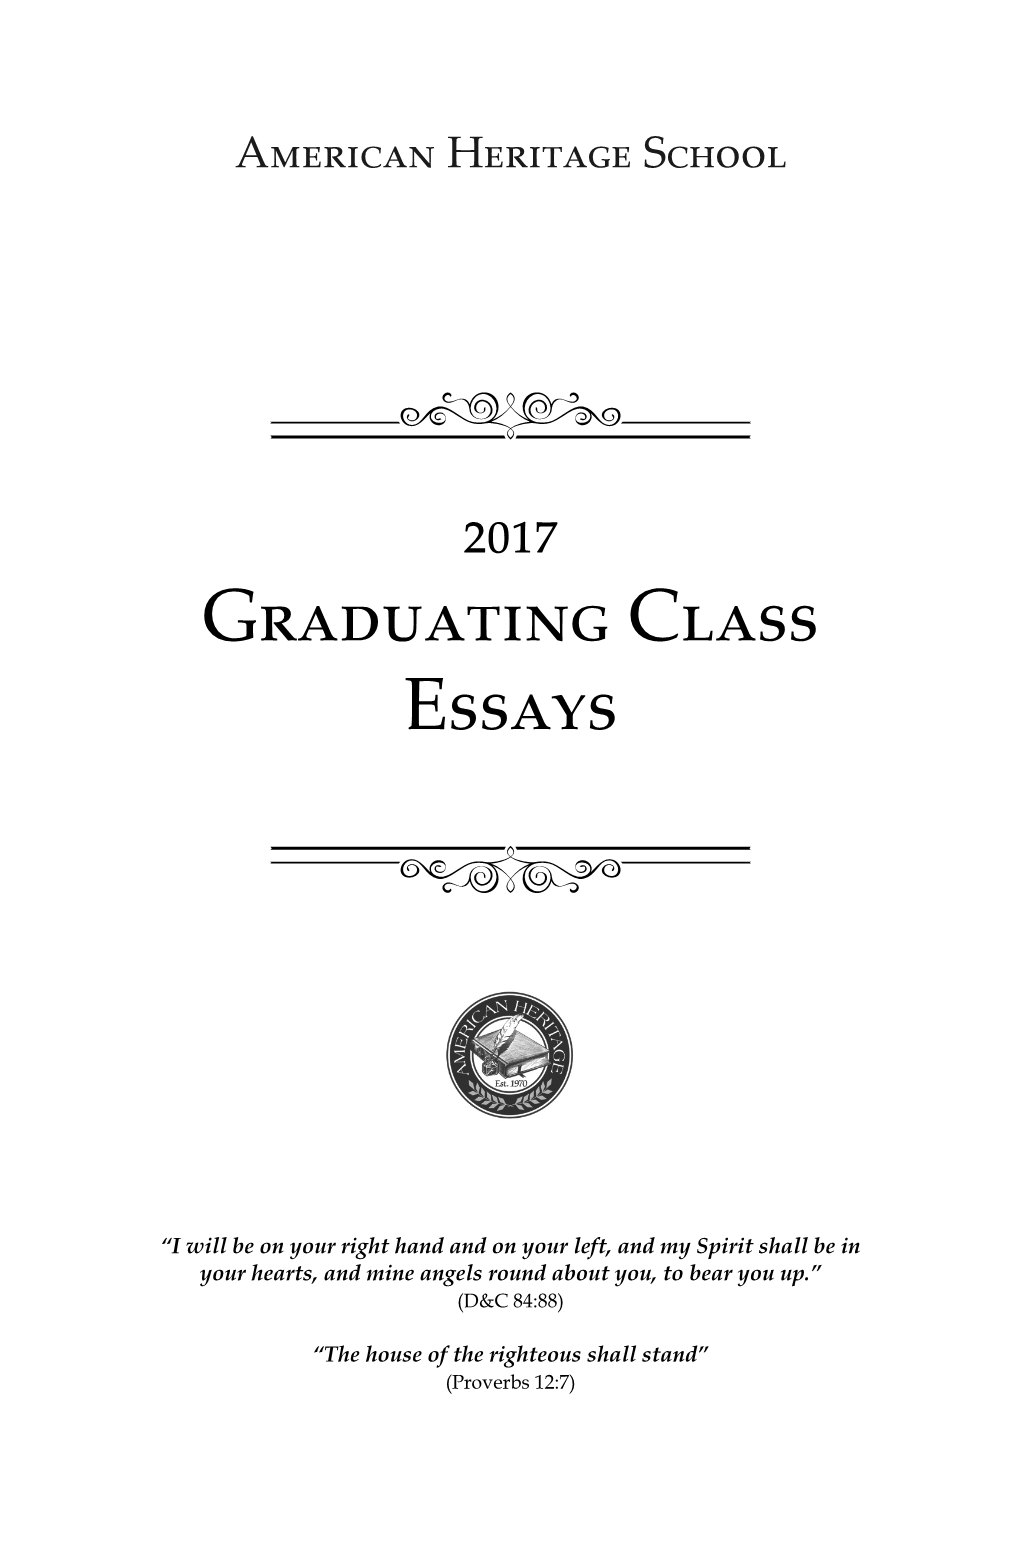 Senior Essays Revised